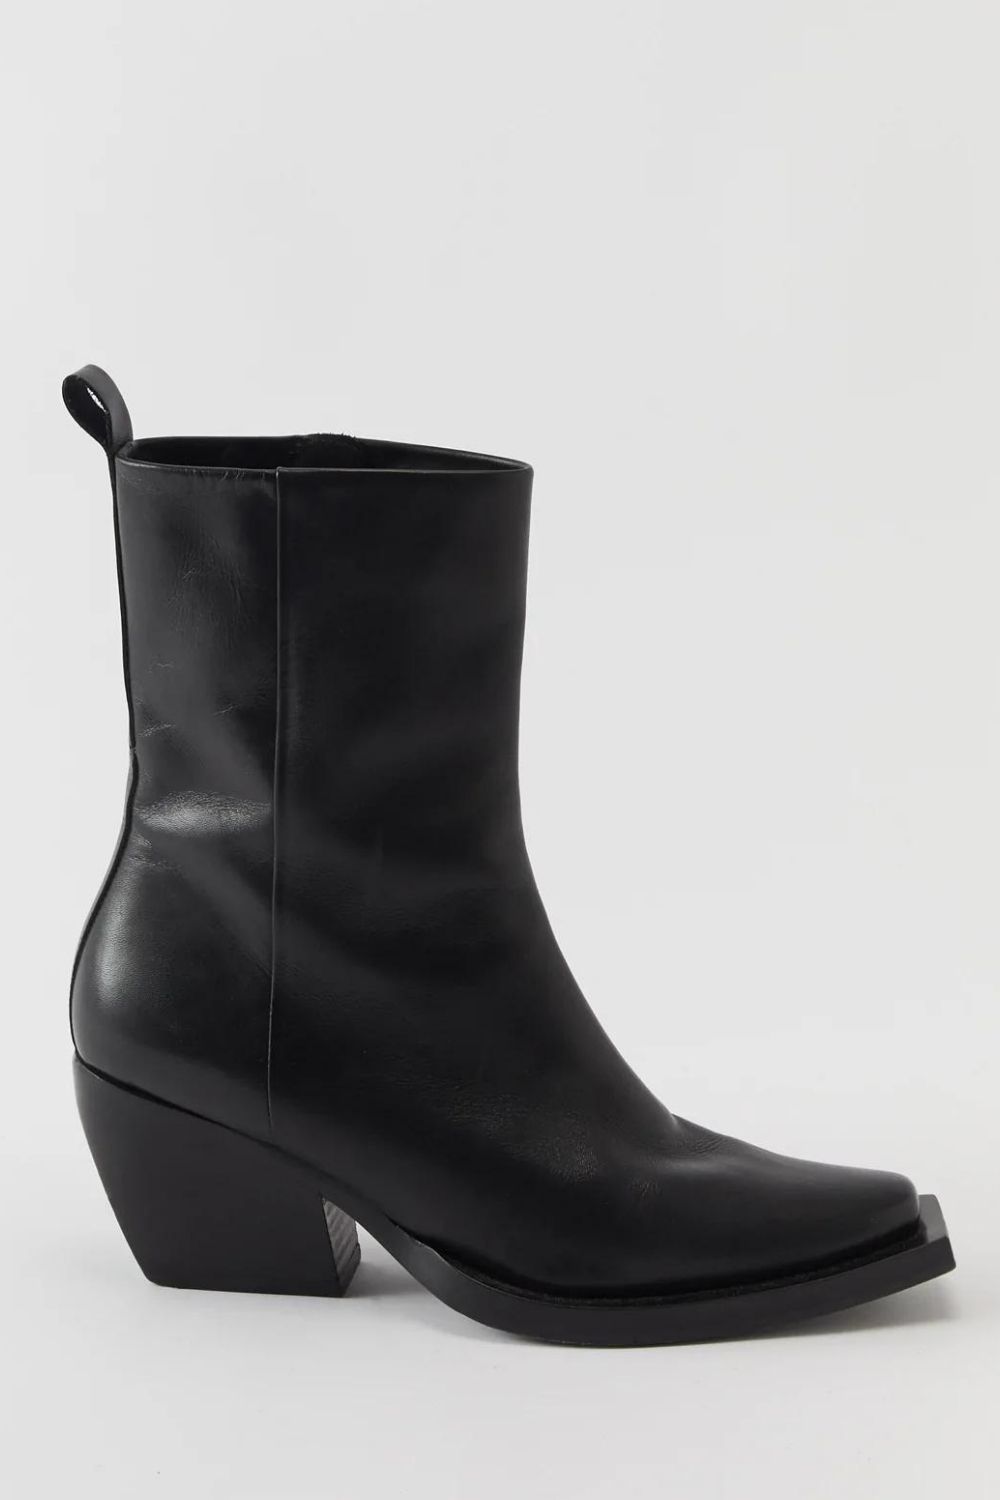 affordable-designer-boots